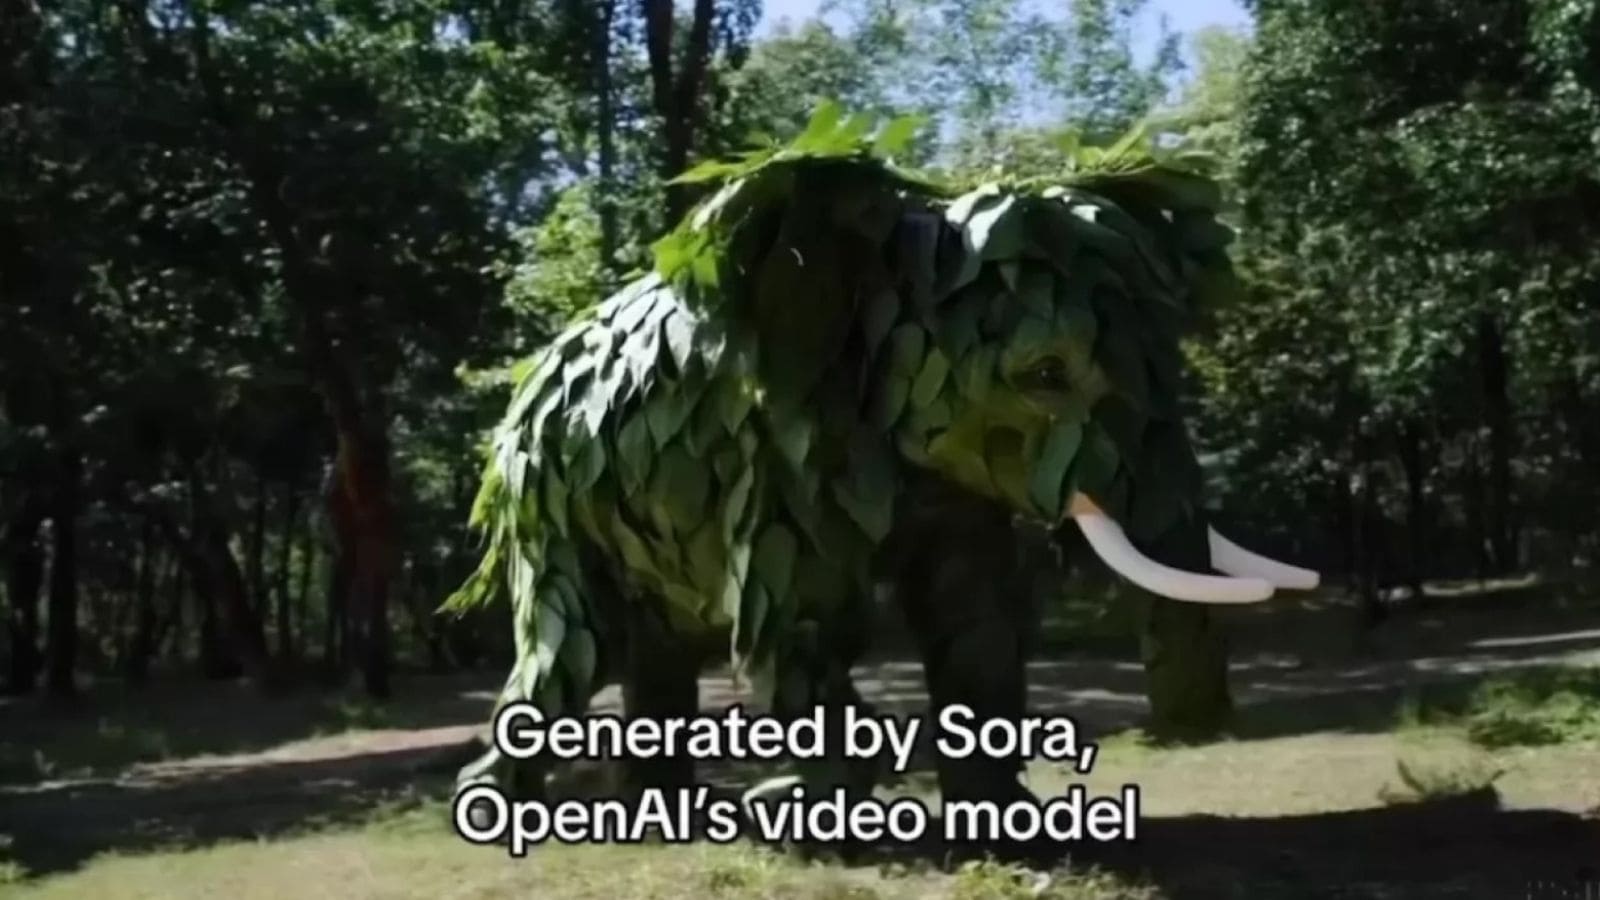 Sora sta aprendo una nuova era della creatività digitale, consentendo di esprimersi attraverso video generati da IA